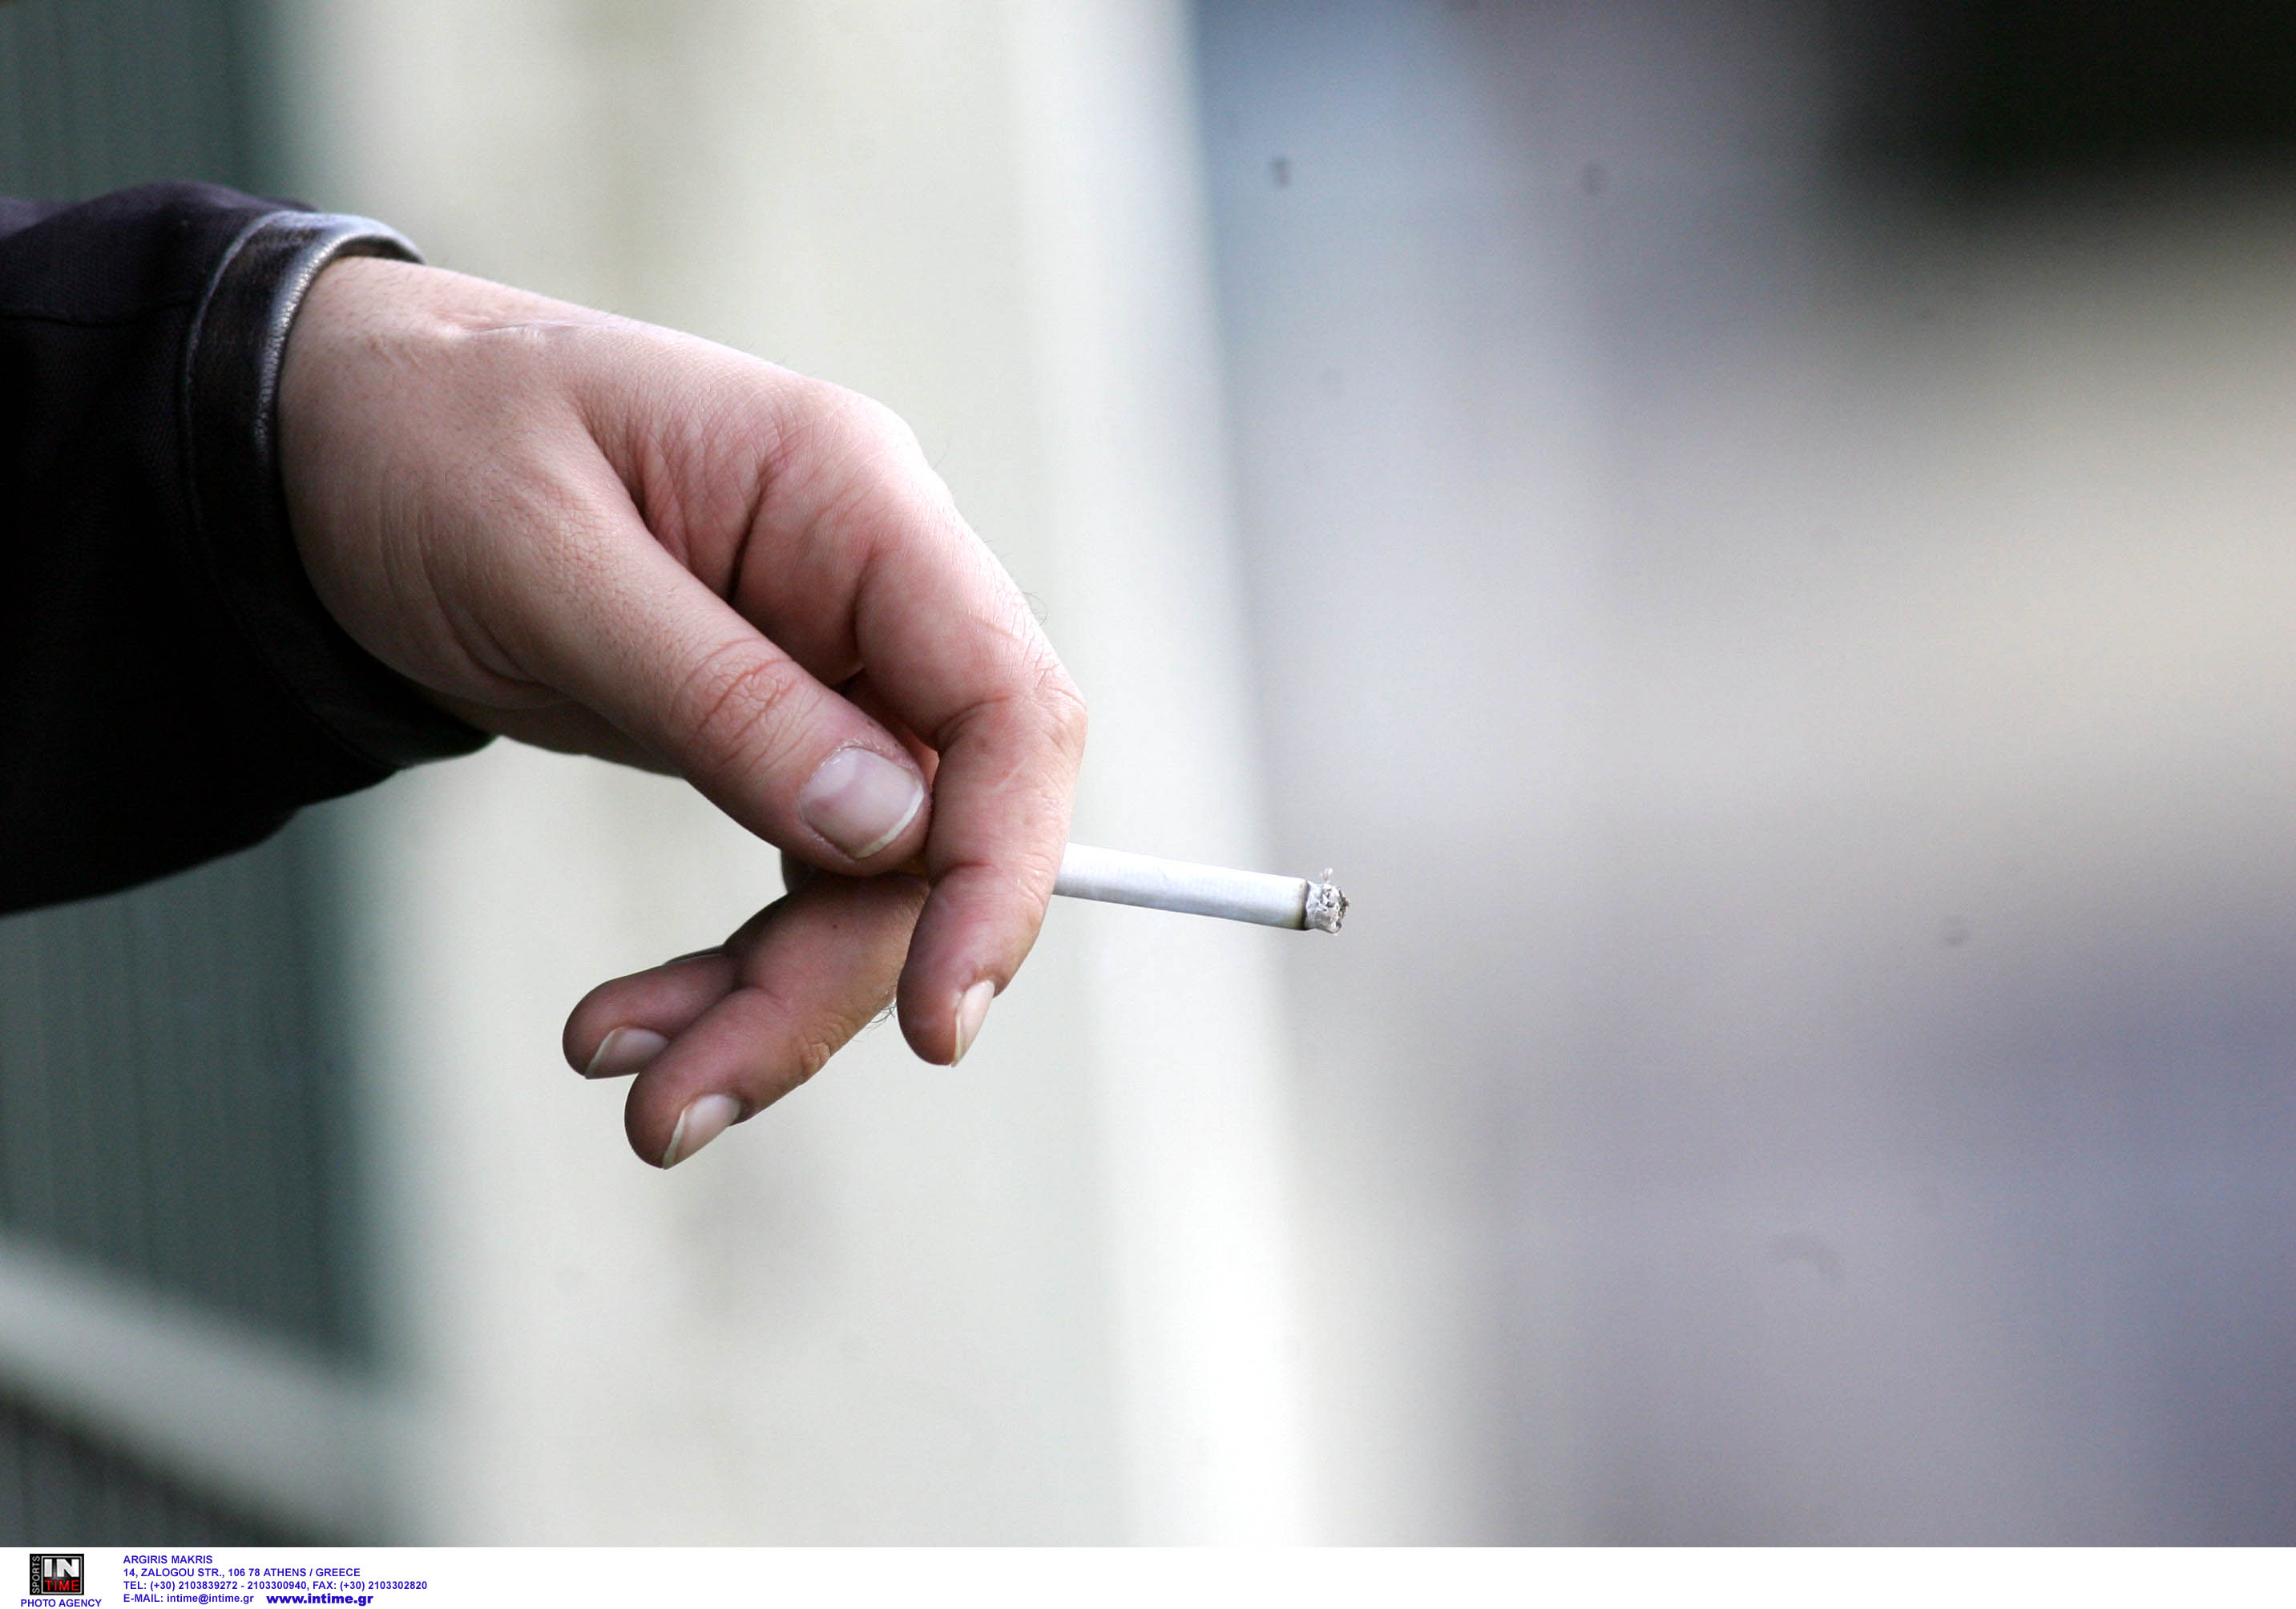 Κρήτη: Η τράκα στα τσιγάρα έφερε μαχαίρωμα – Στη φυλακή ο δράστης της επίθεσης σε καφενείο!